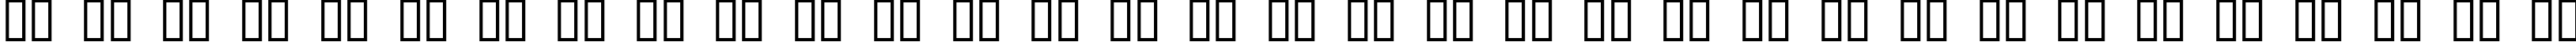 Пример написания русского алфавита шрифтом Surf Punx Light